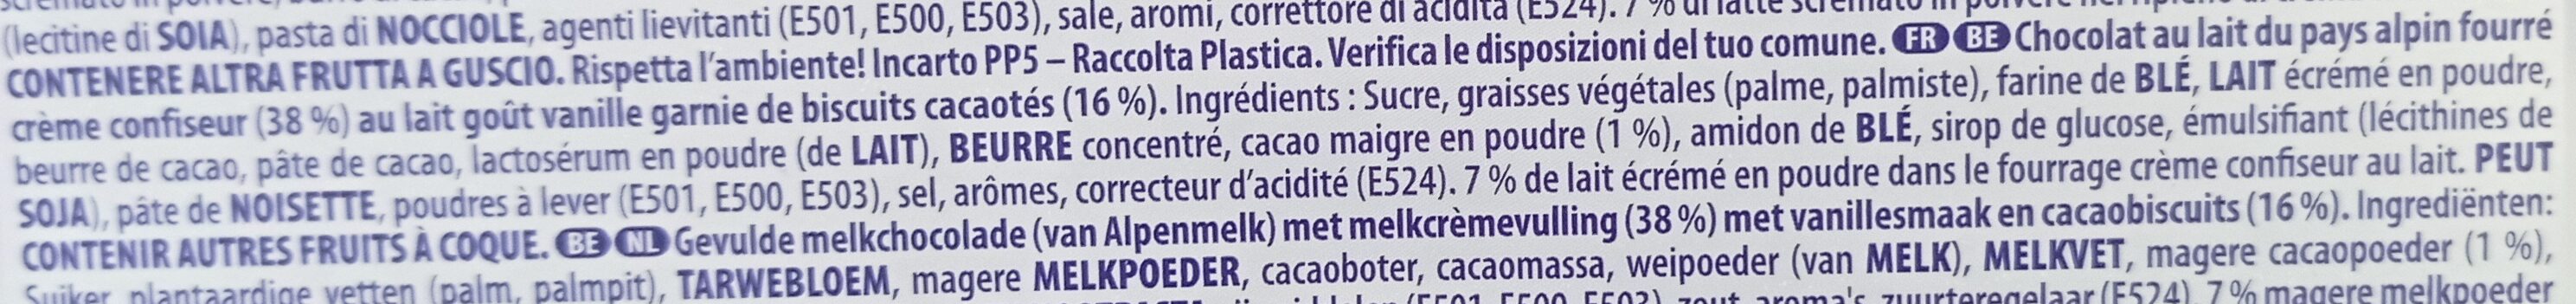 Milka Oreo extra gourmand - Ingrédients